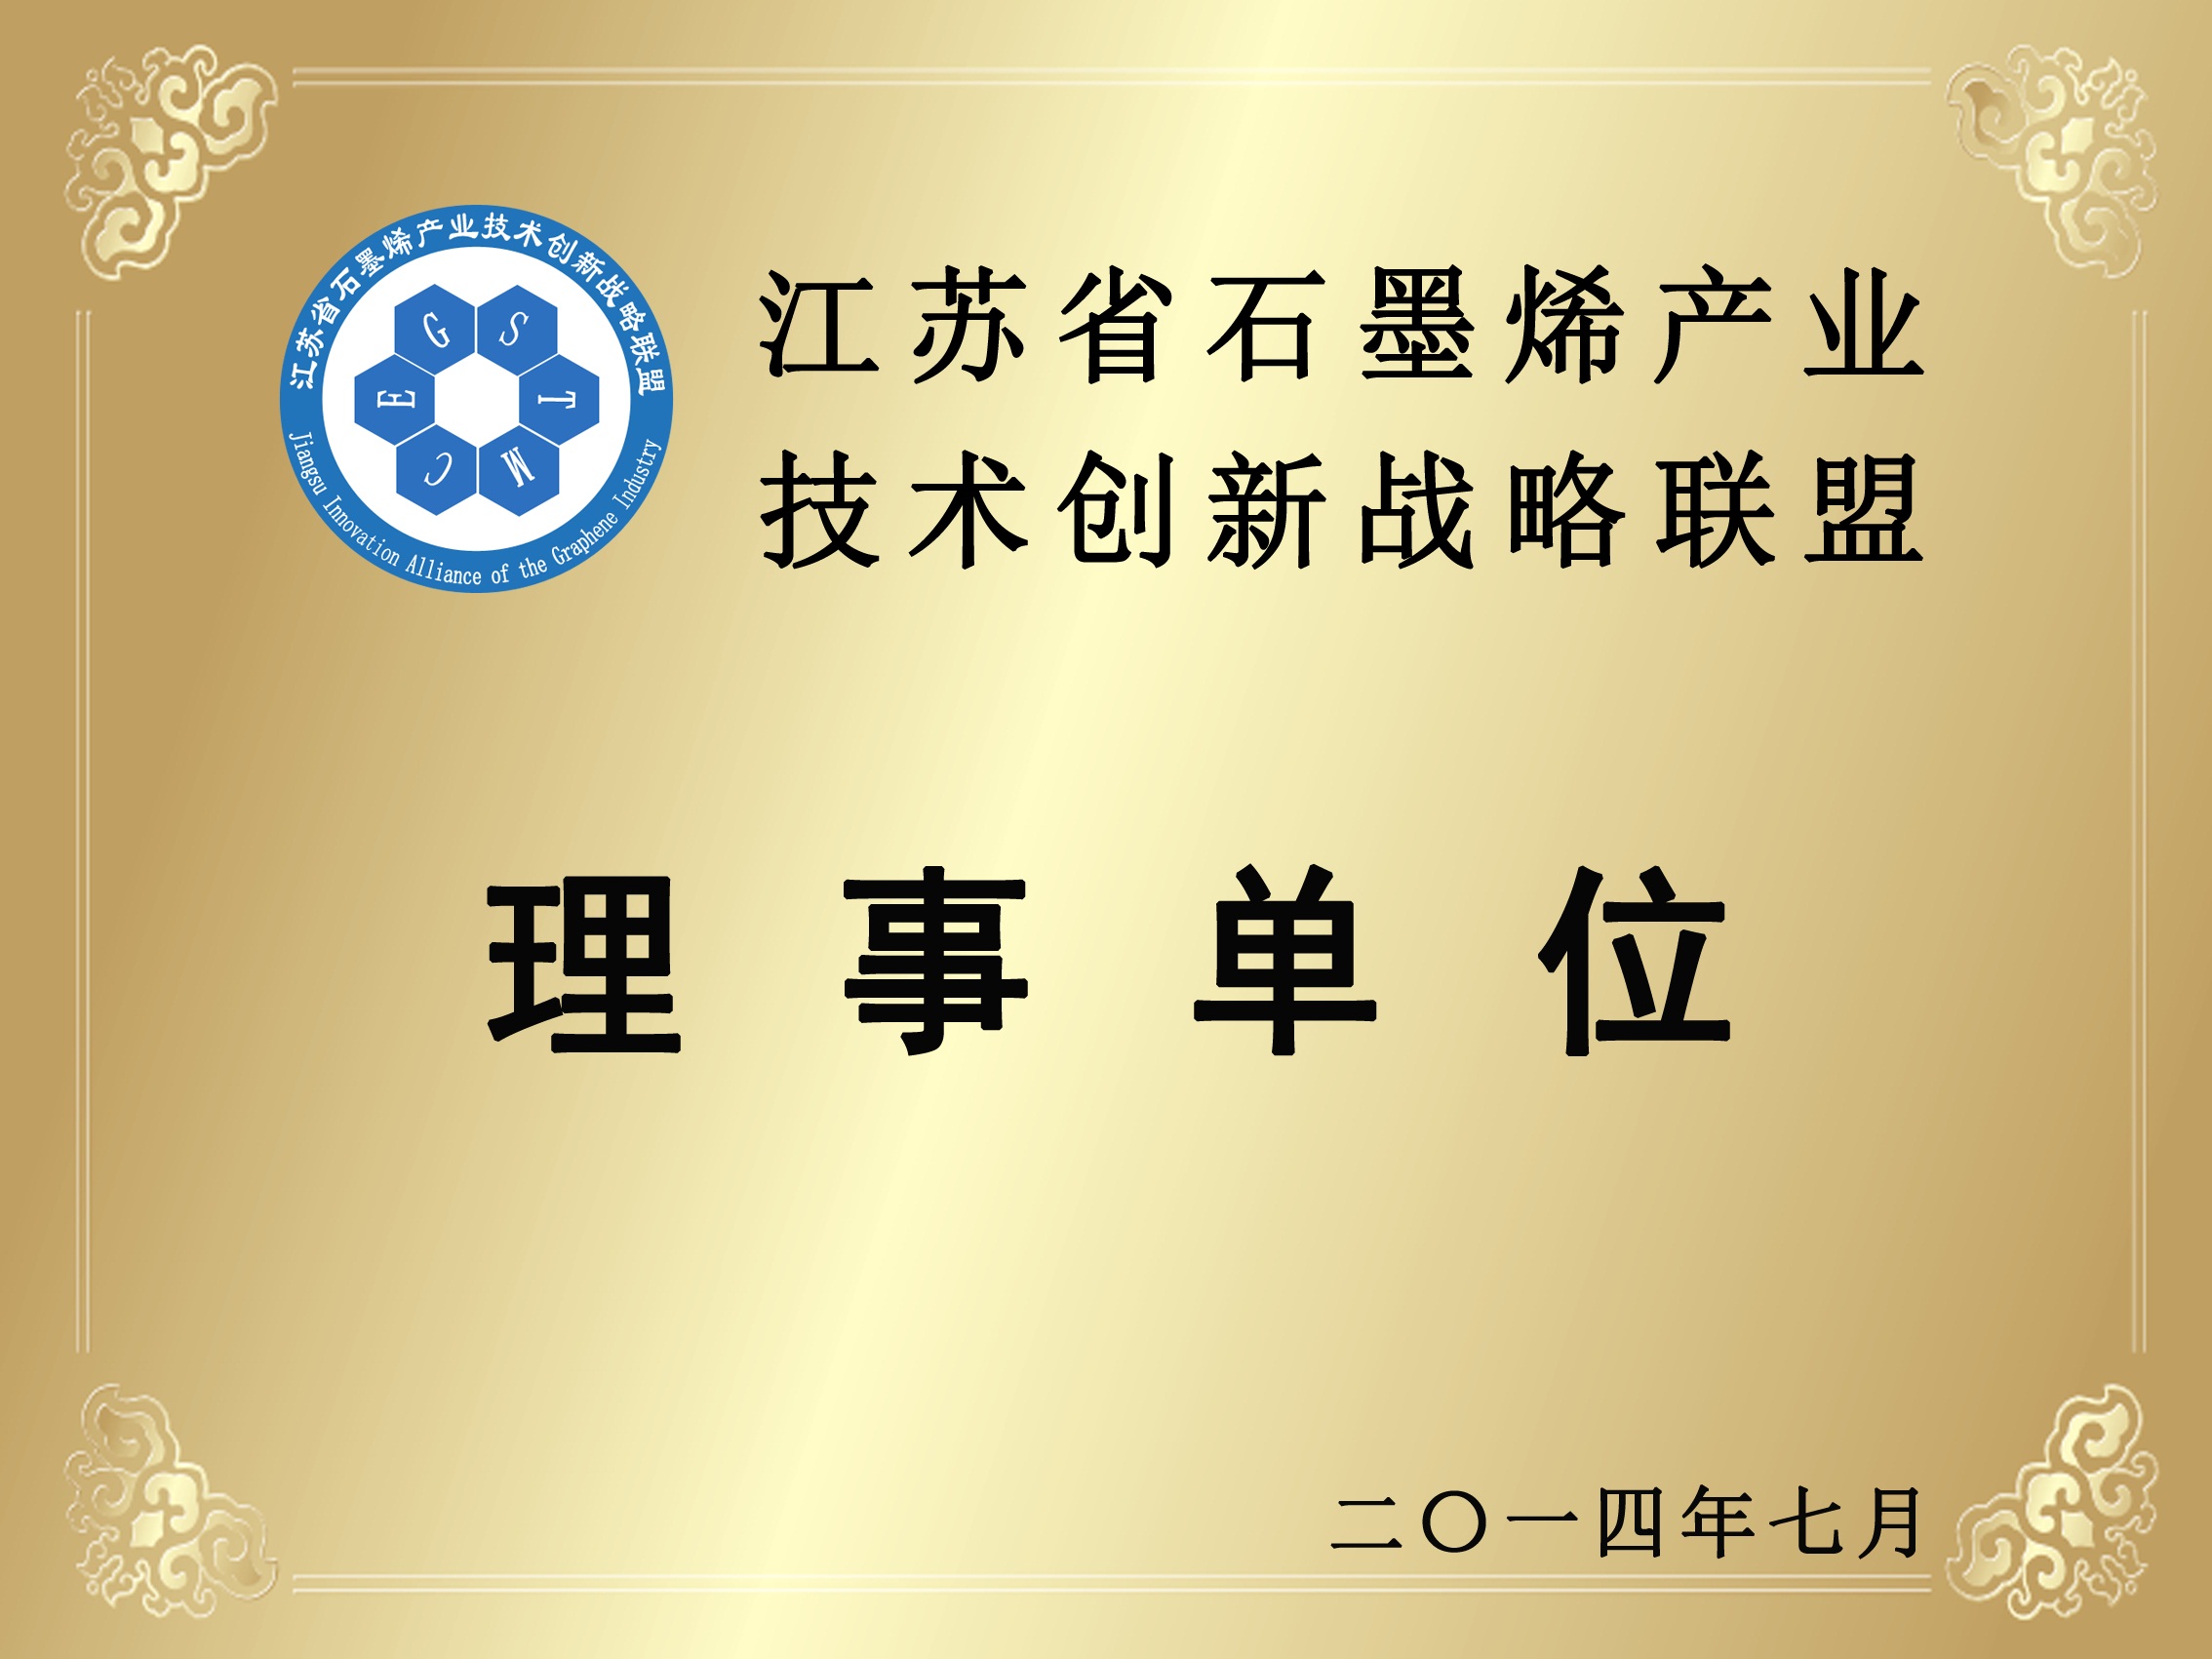 江苏省石墨烯产业技术创新战略联盟理事单位招牌